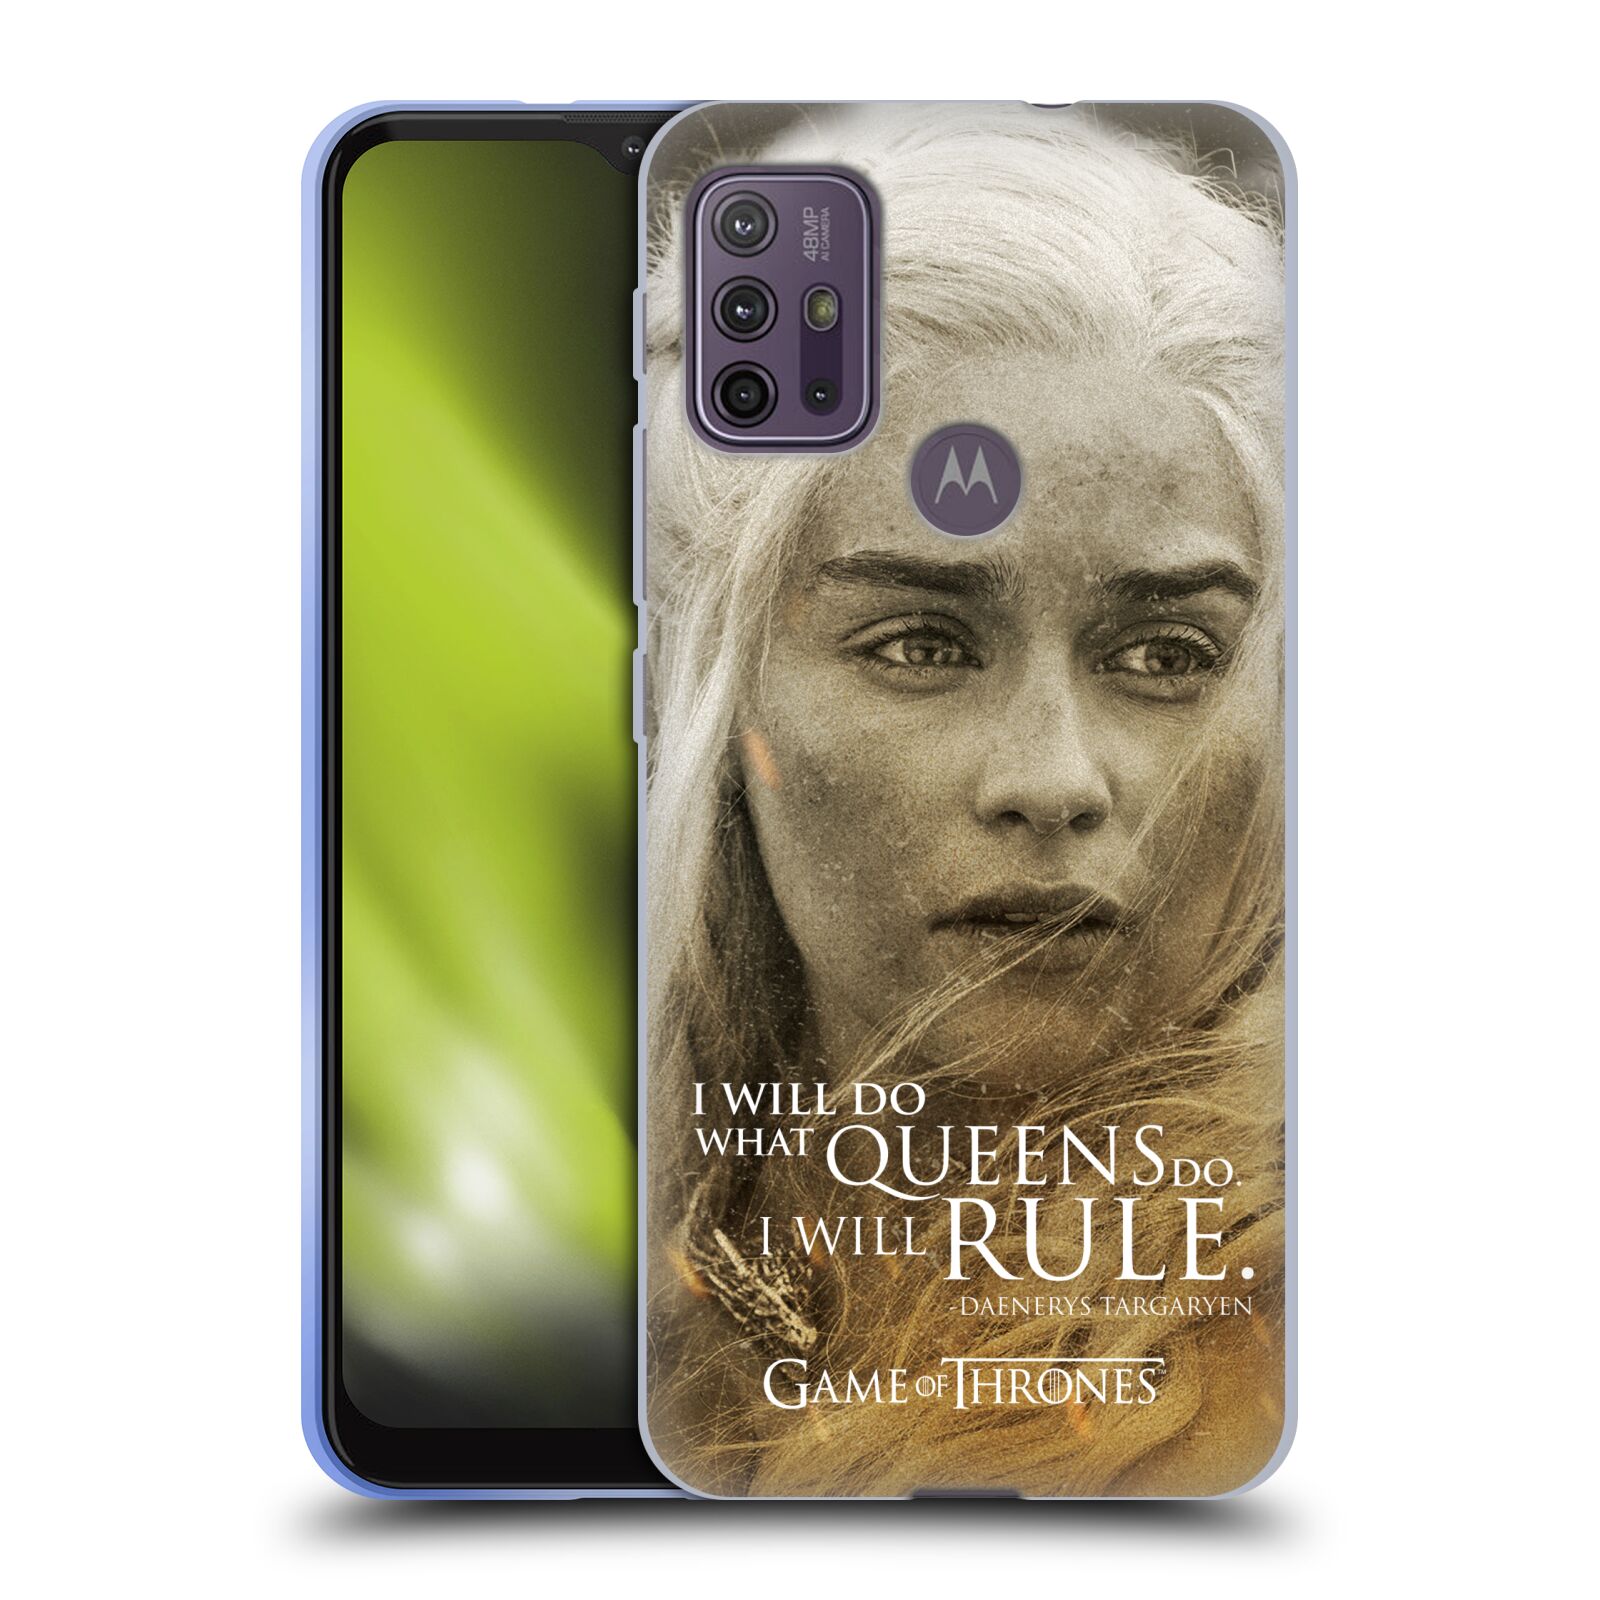 Silikonové pouzdro na mobil Motorola Moto G10 / G30 - Head Case - Hra o trůny - Daenerys Targaryen